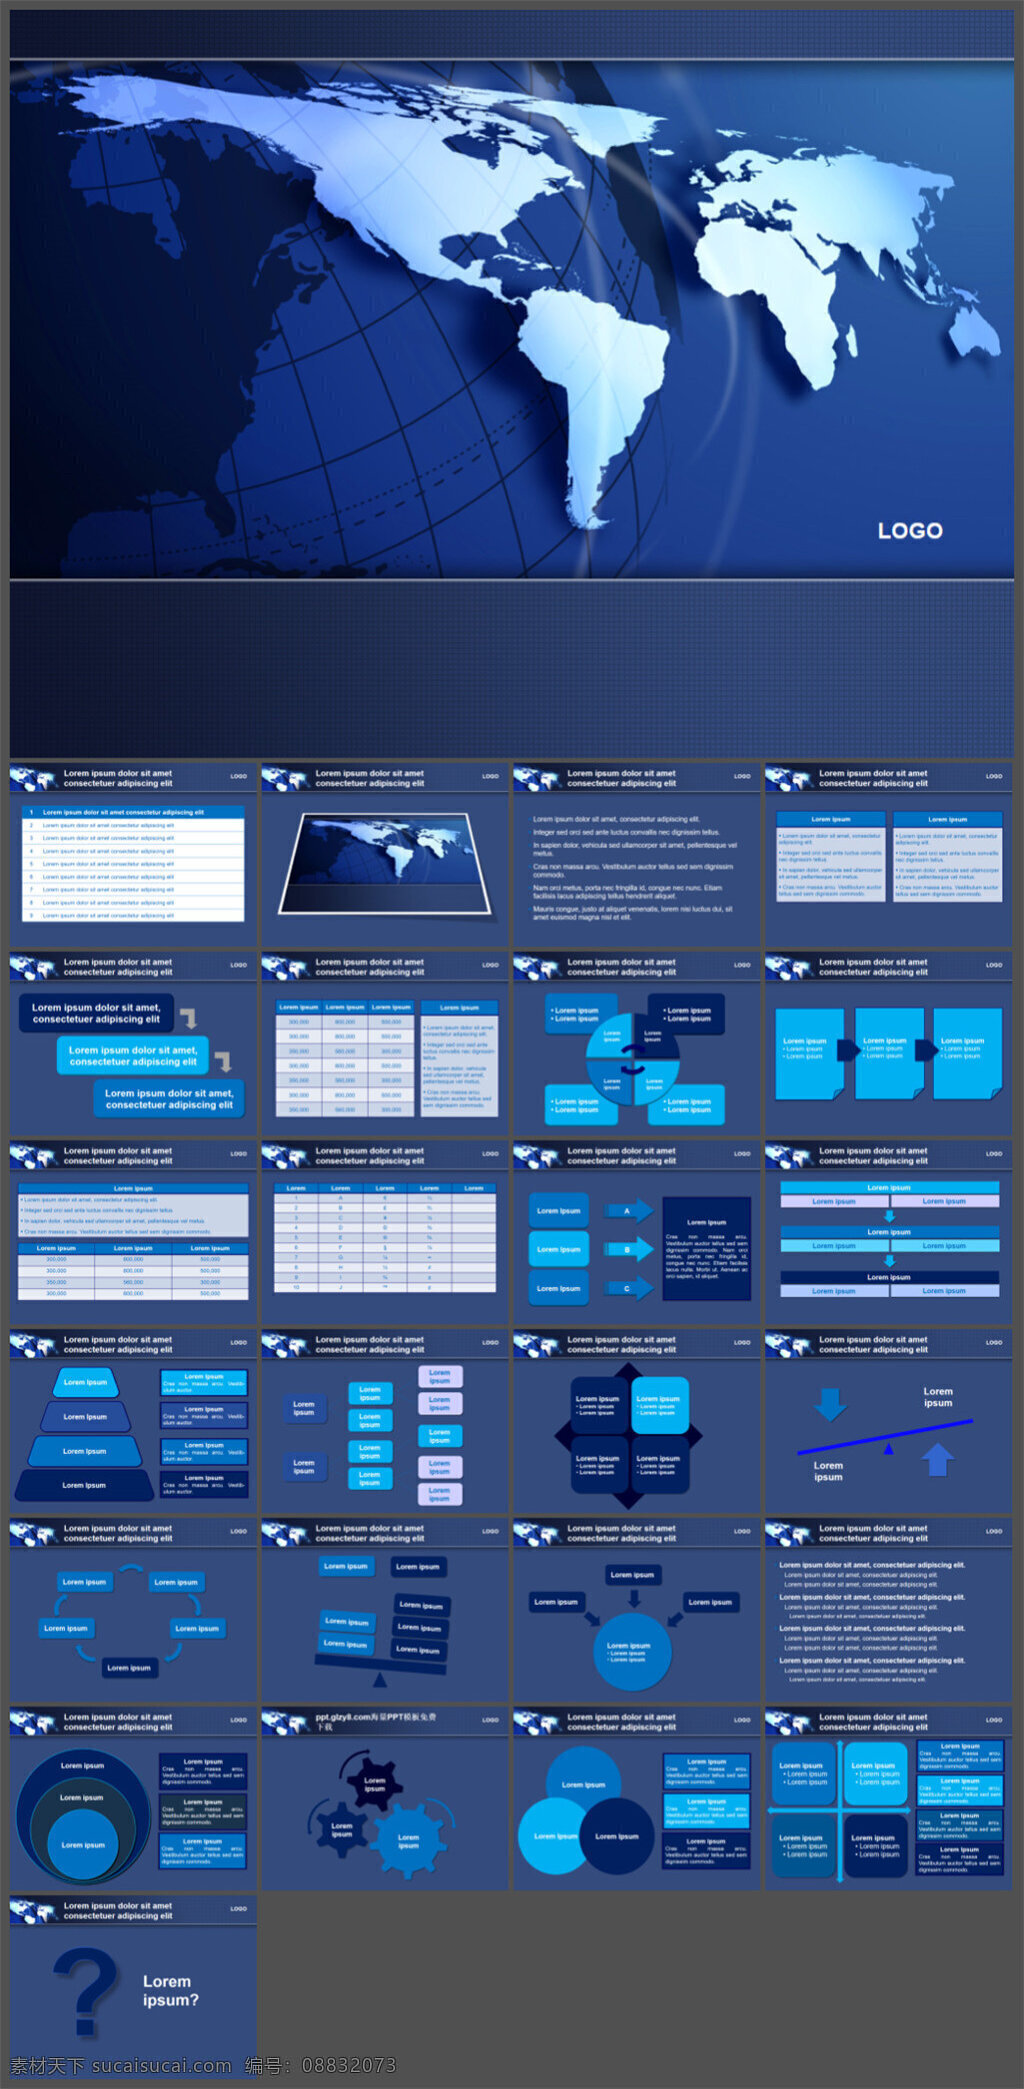 全球 地图 模板 制作 多媒体 企业 动态 模版素材下载 ppt素材 模版 企业素材 pptx 蓝色